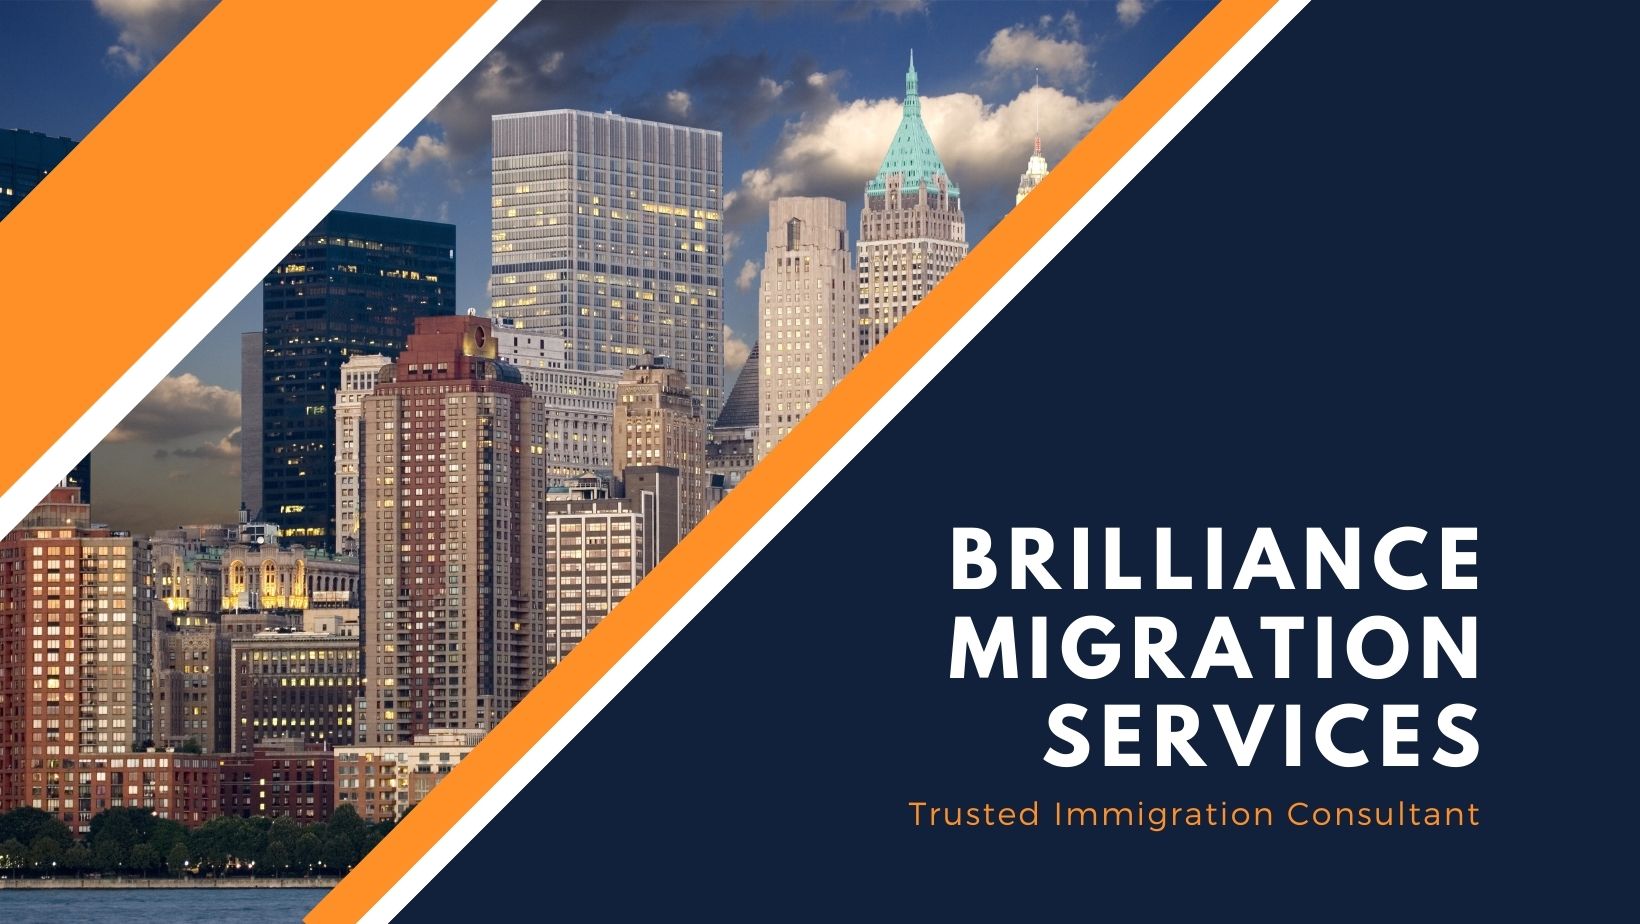 Services Brilliance Migration